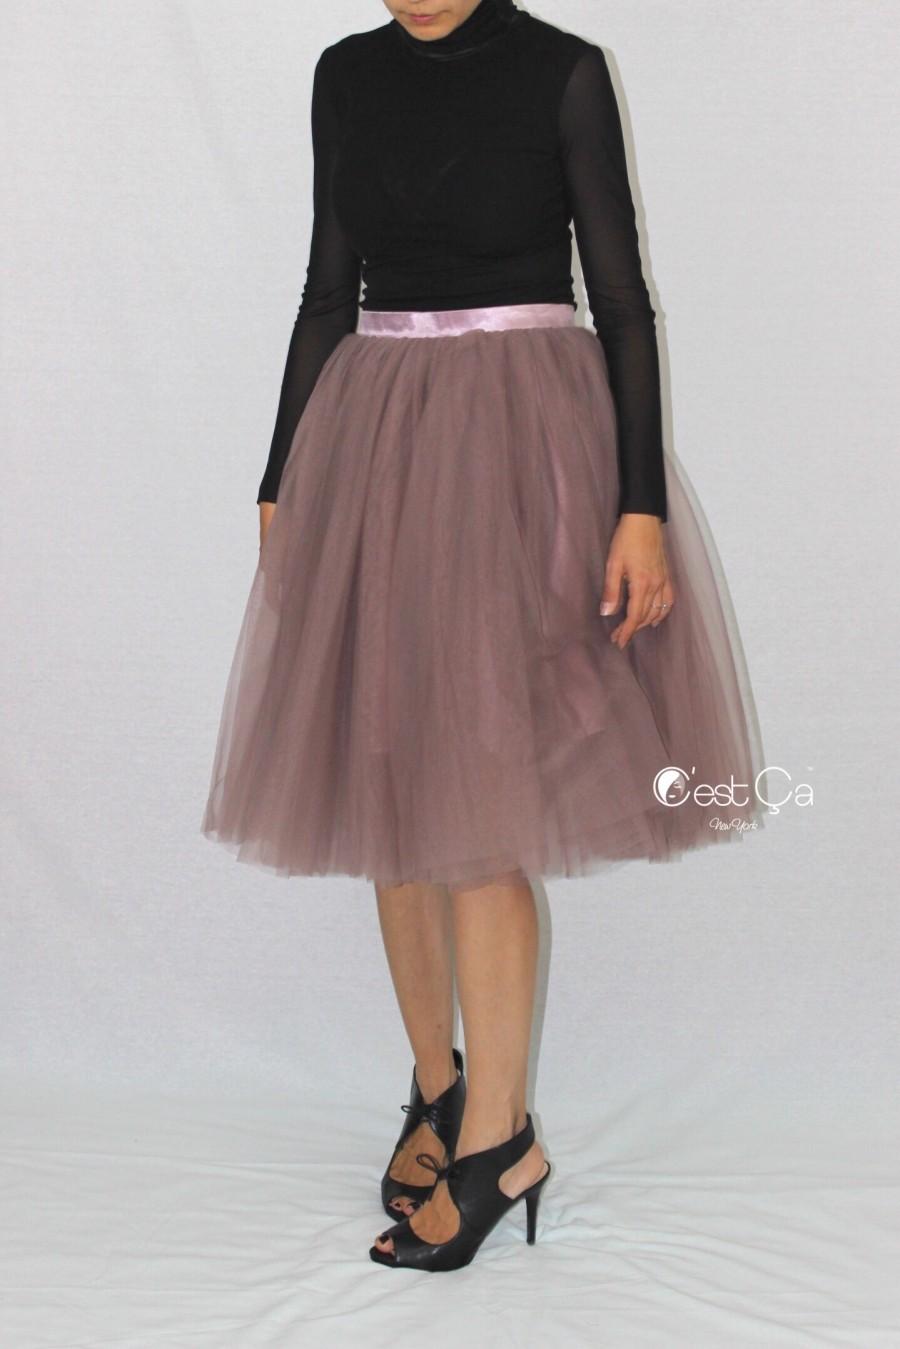 Wedding - Colette Purple Gray Tulle Skirt - Length 26" - C'est Ça New York